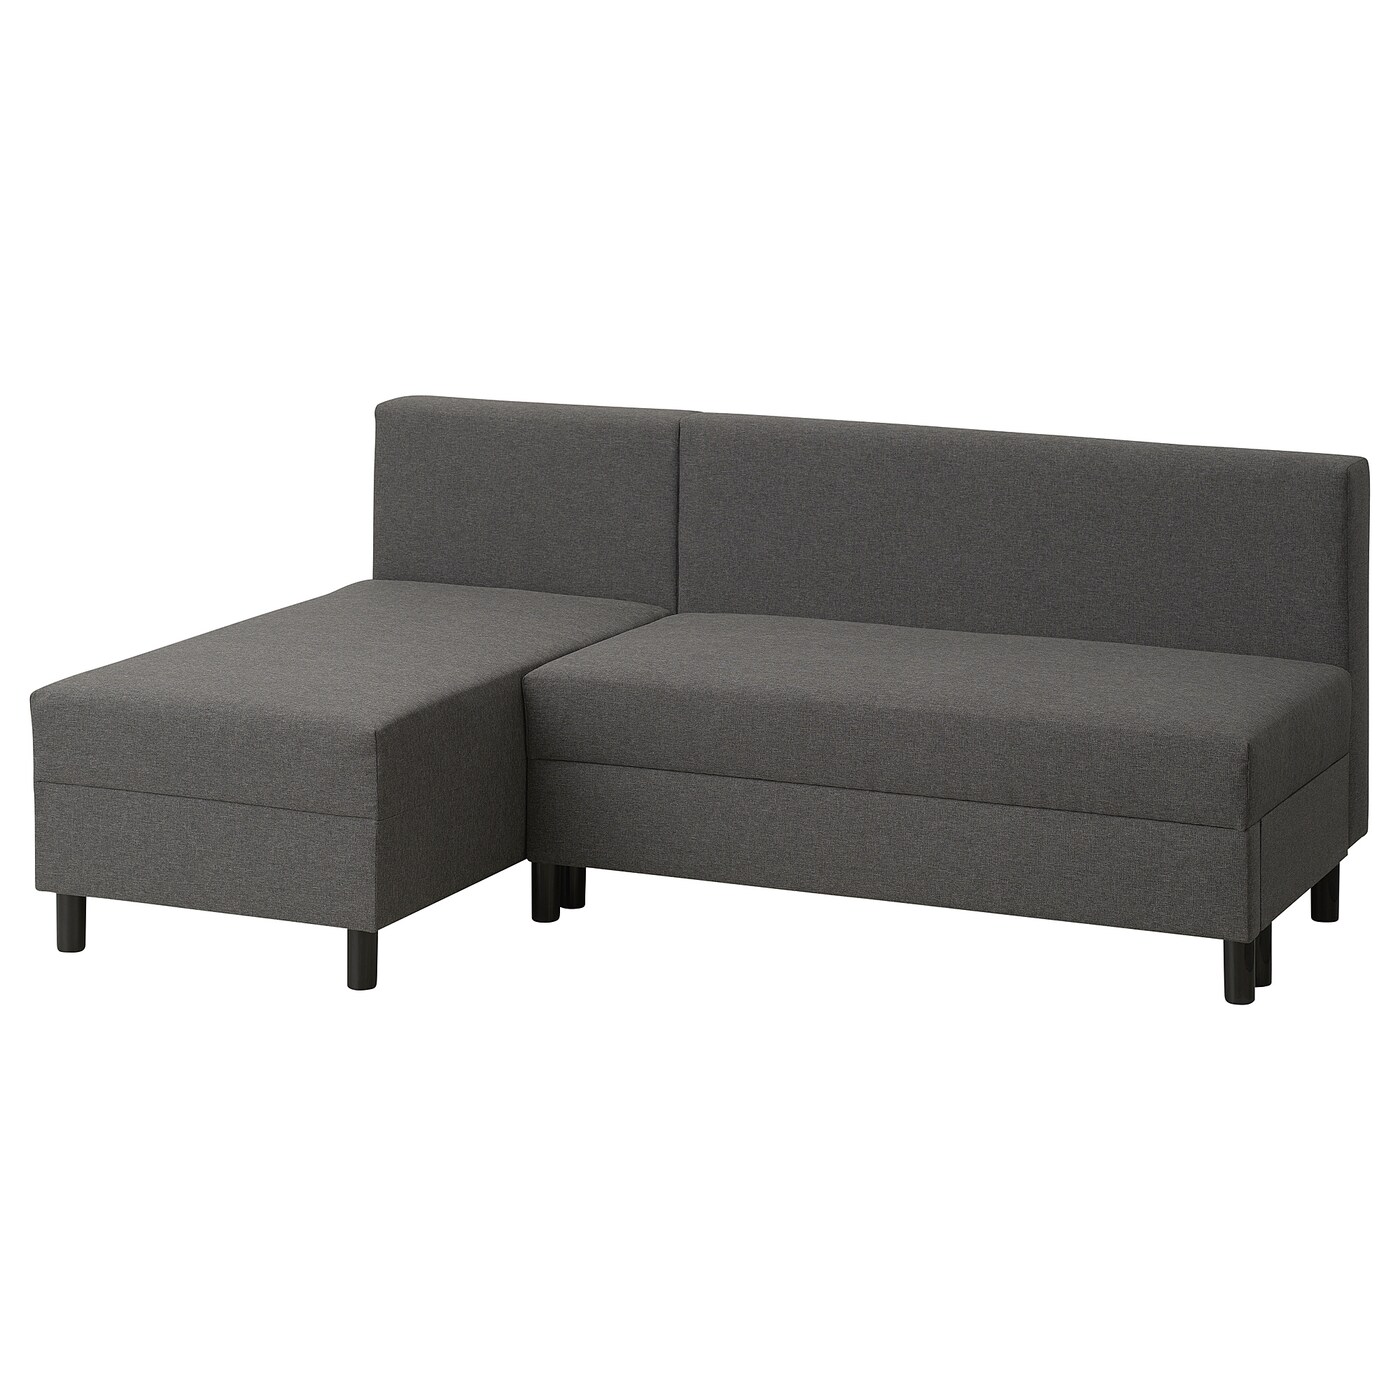 3-местный диван - IKEA BORGÅSEN/BORGASEN, 77x81x199см, темно-серый, БОРГАСЕН ИКЕА